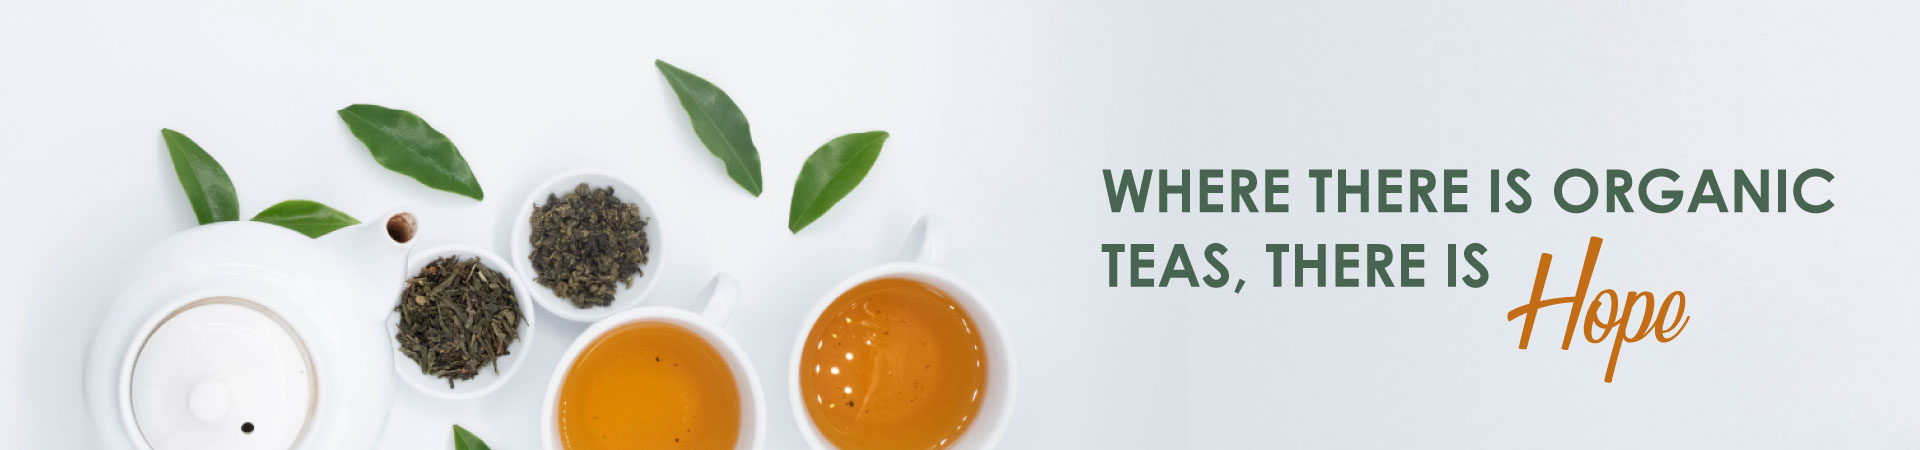 green-tea-banner